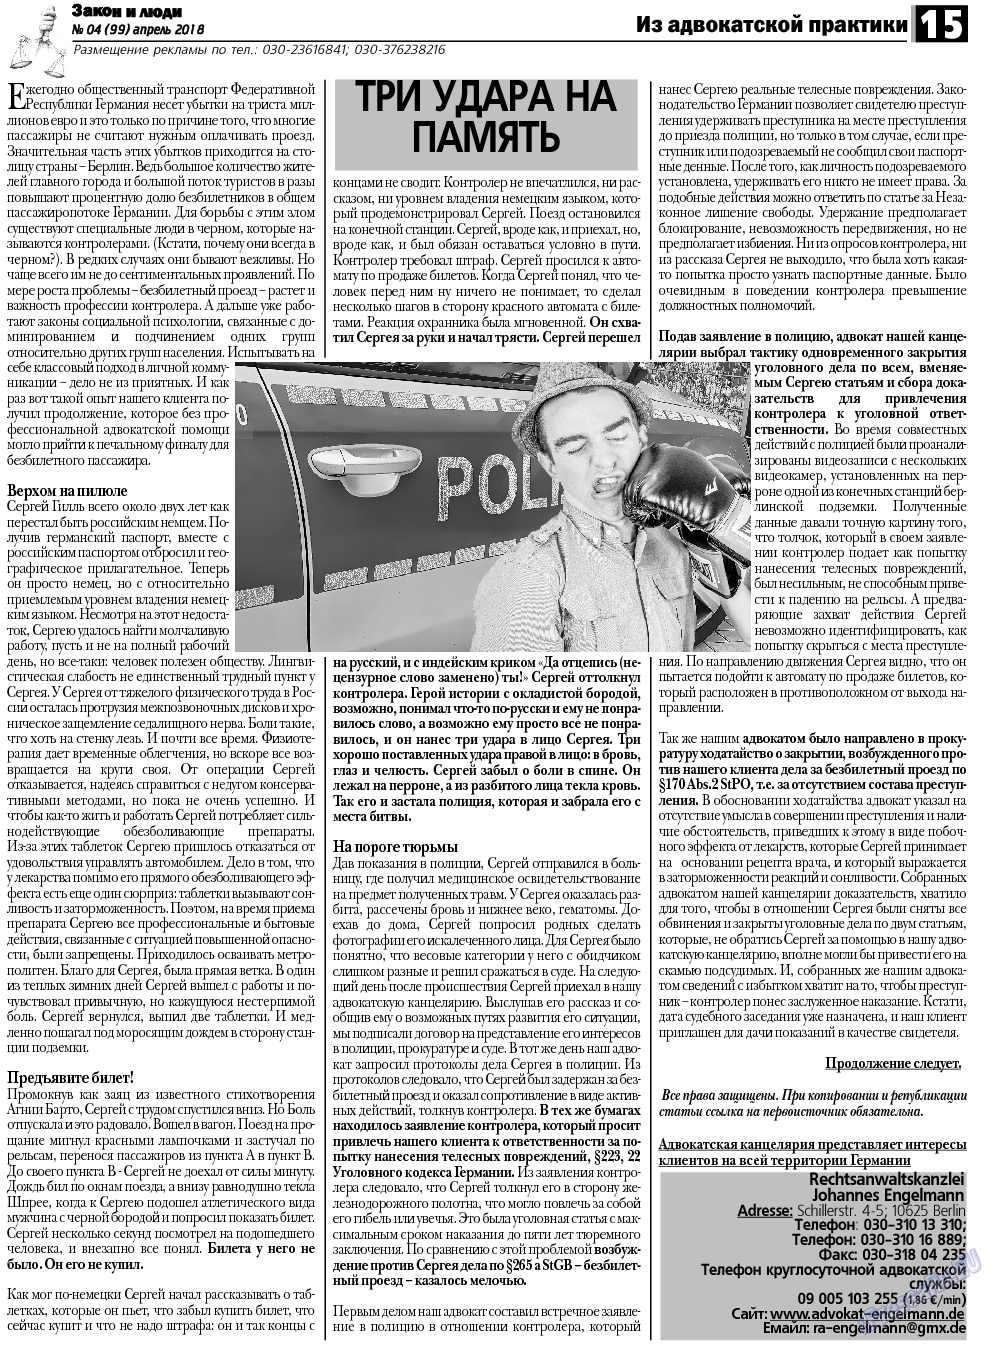 Закон и люди, газета. 2018 №4 стр.15